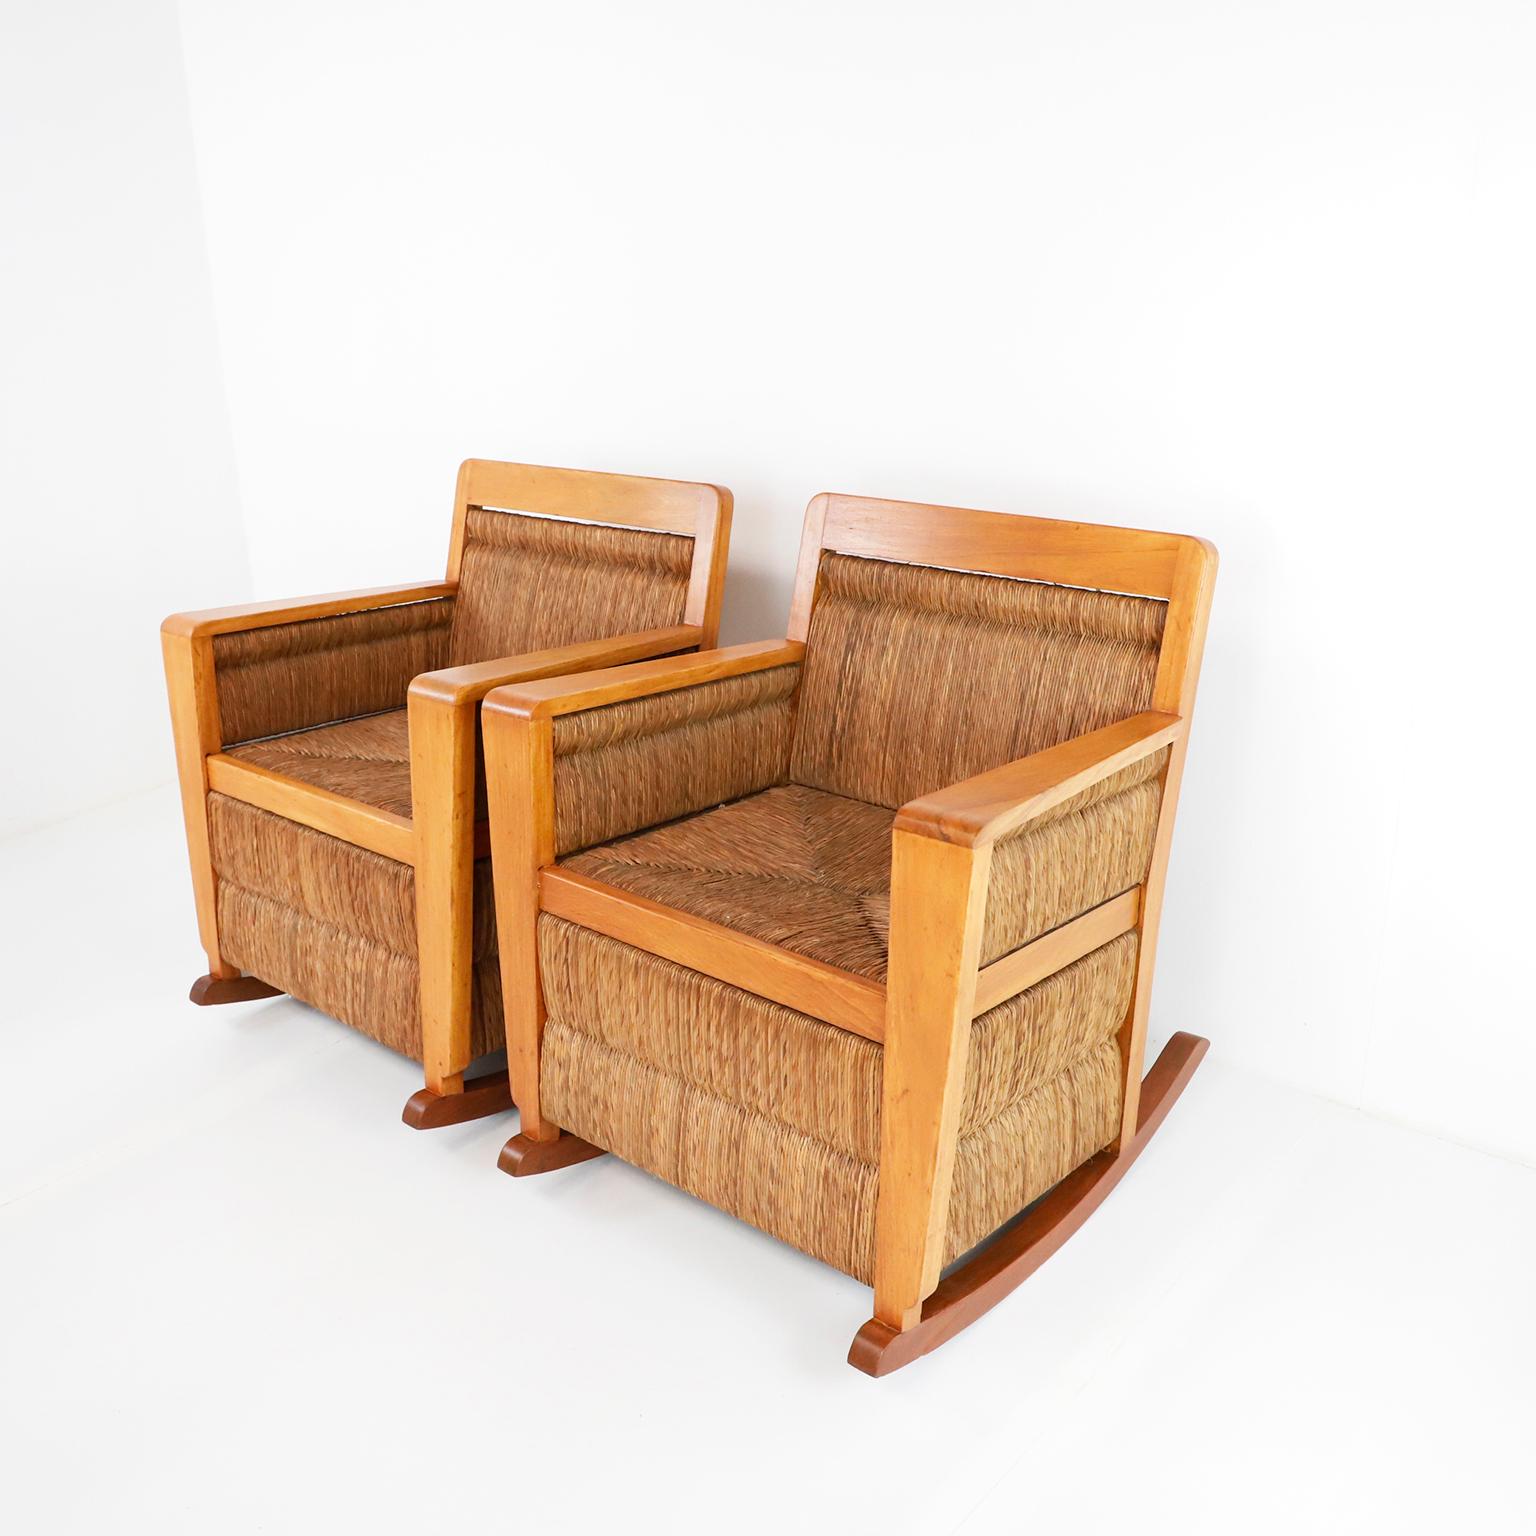 Zwei mexikanische geflochtene Schaukelstühle aus den 1950er Jahren aus Primavera-Holz und Palmenschnüren. Mit seinem schlichten, aber eleganten und modernen Rahmen bietet dieser Schaukelstuhl mit seinem schön geflochtenen Sitz überraschend viel